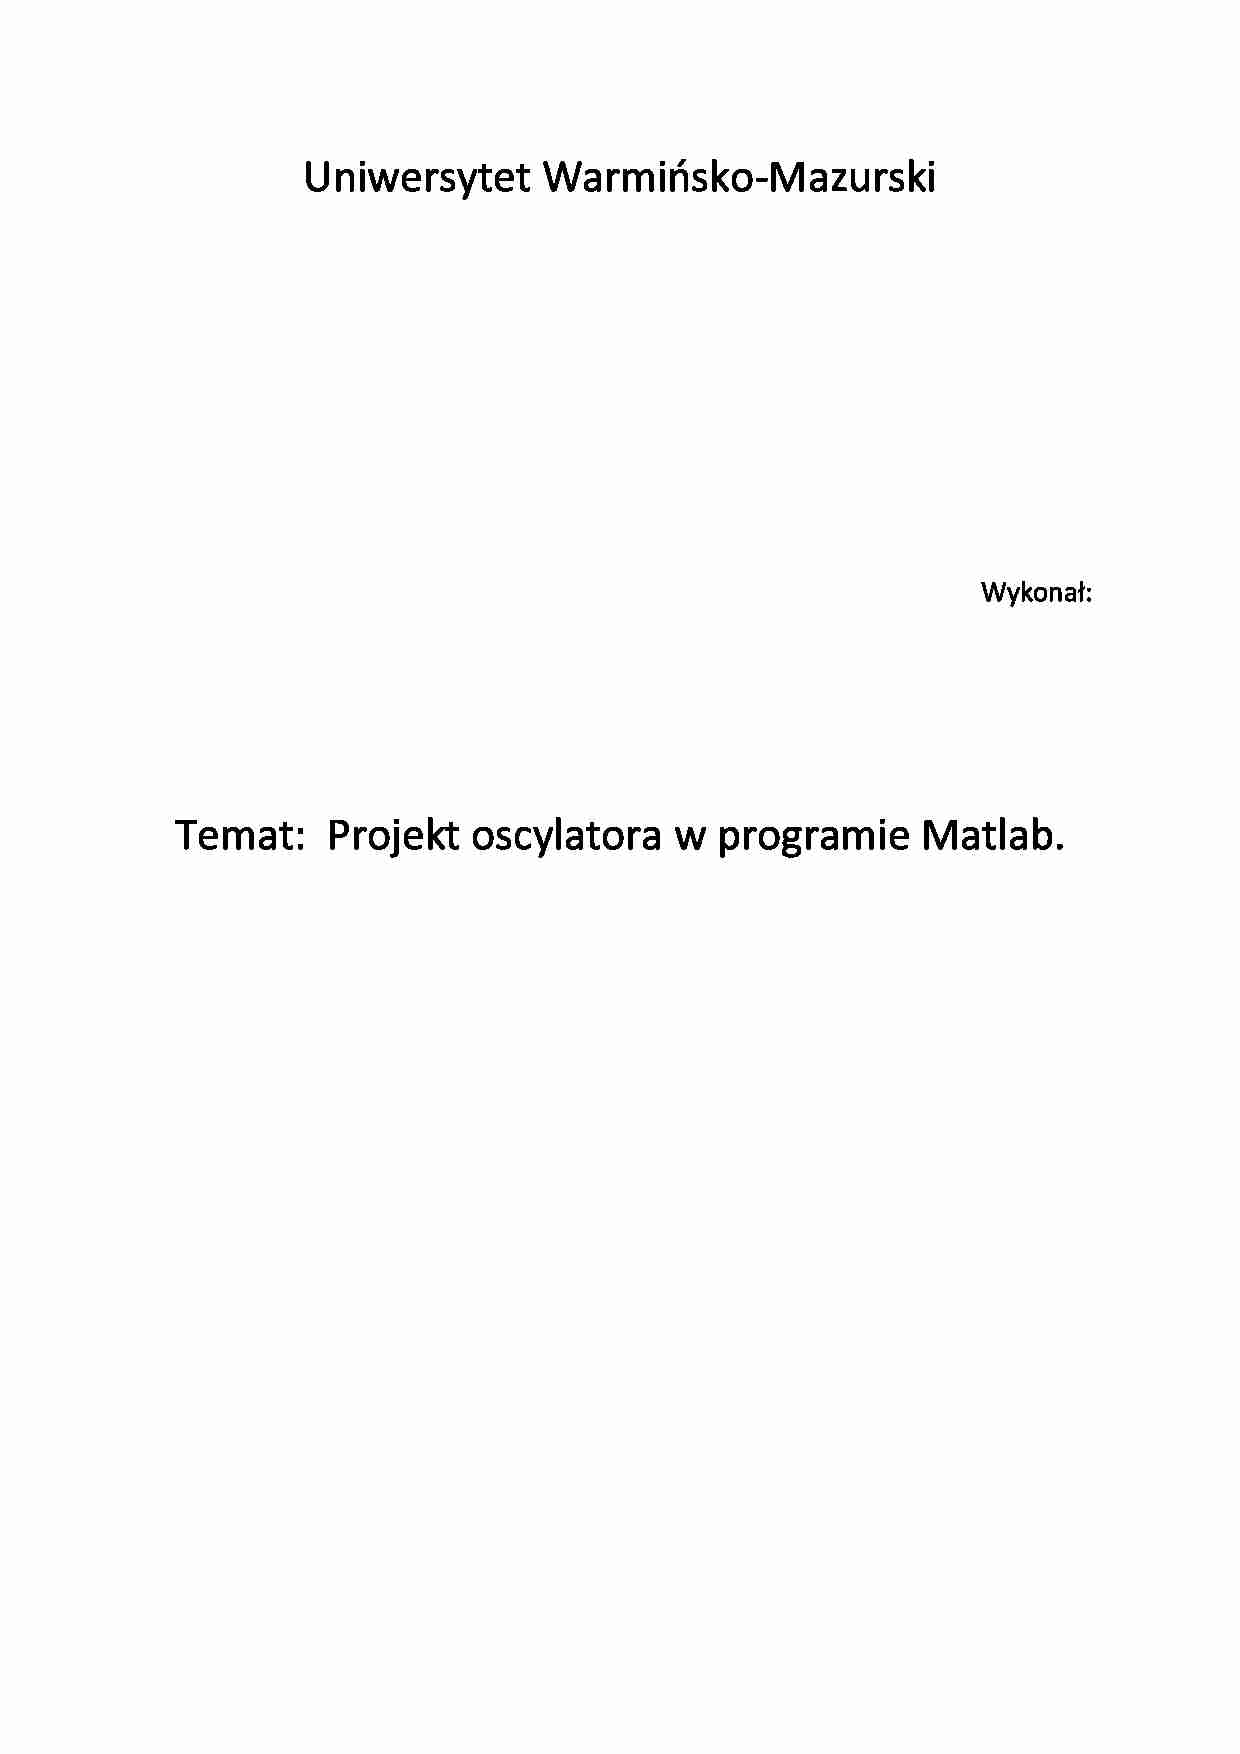 [ĆWICZENIA] Sprawozdanie Projekt oscylatora w programie Matlab - strona 1